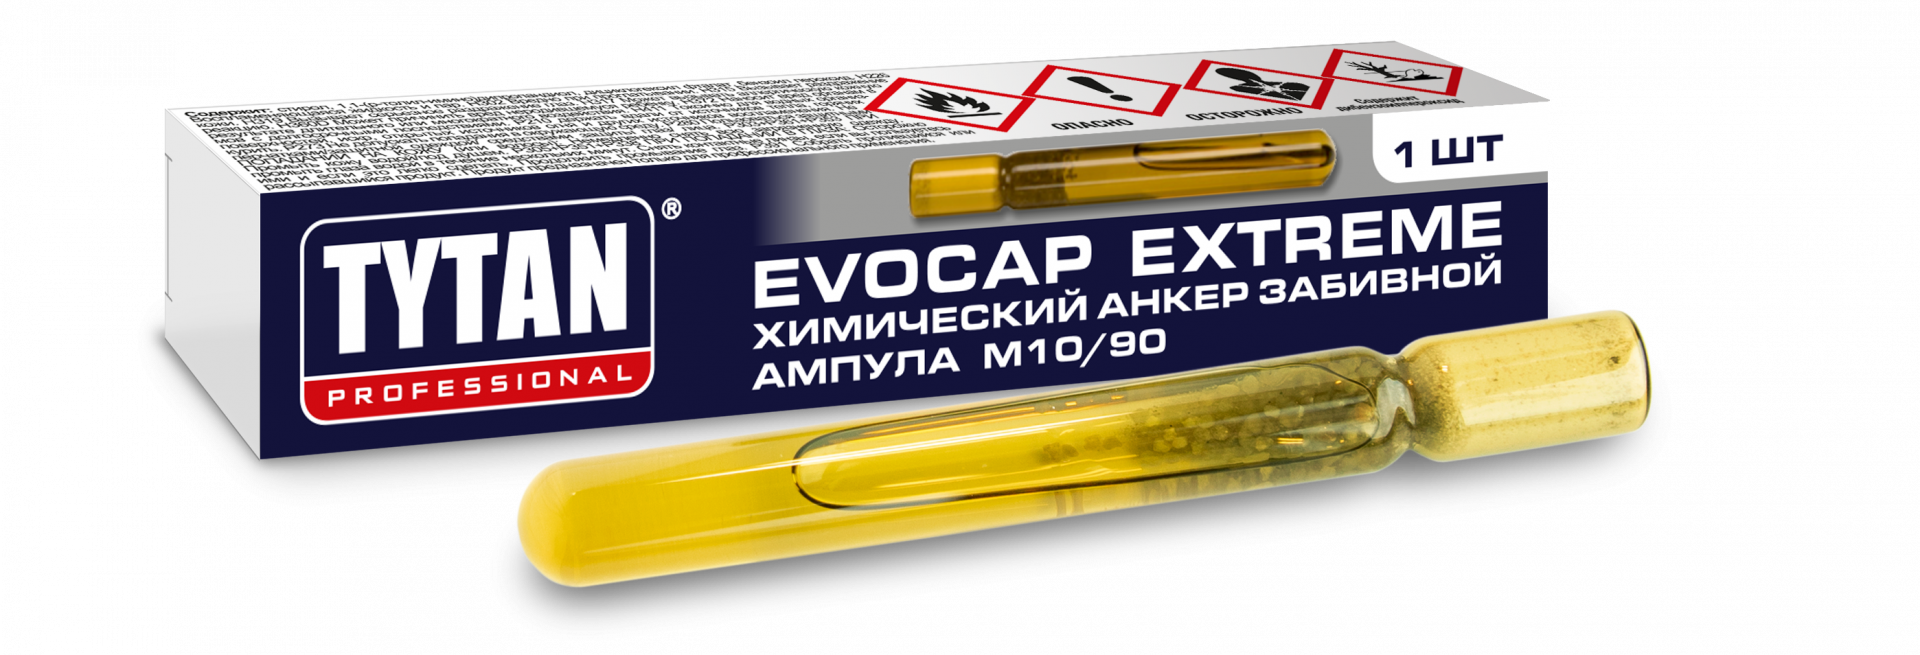 Химический анкер ампула Tytan Evocap Standard M10/90 забивной